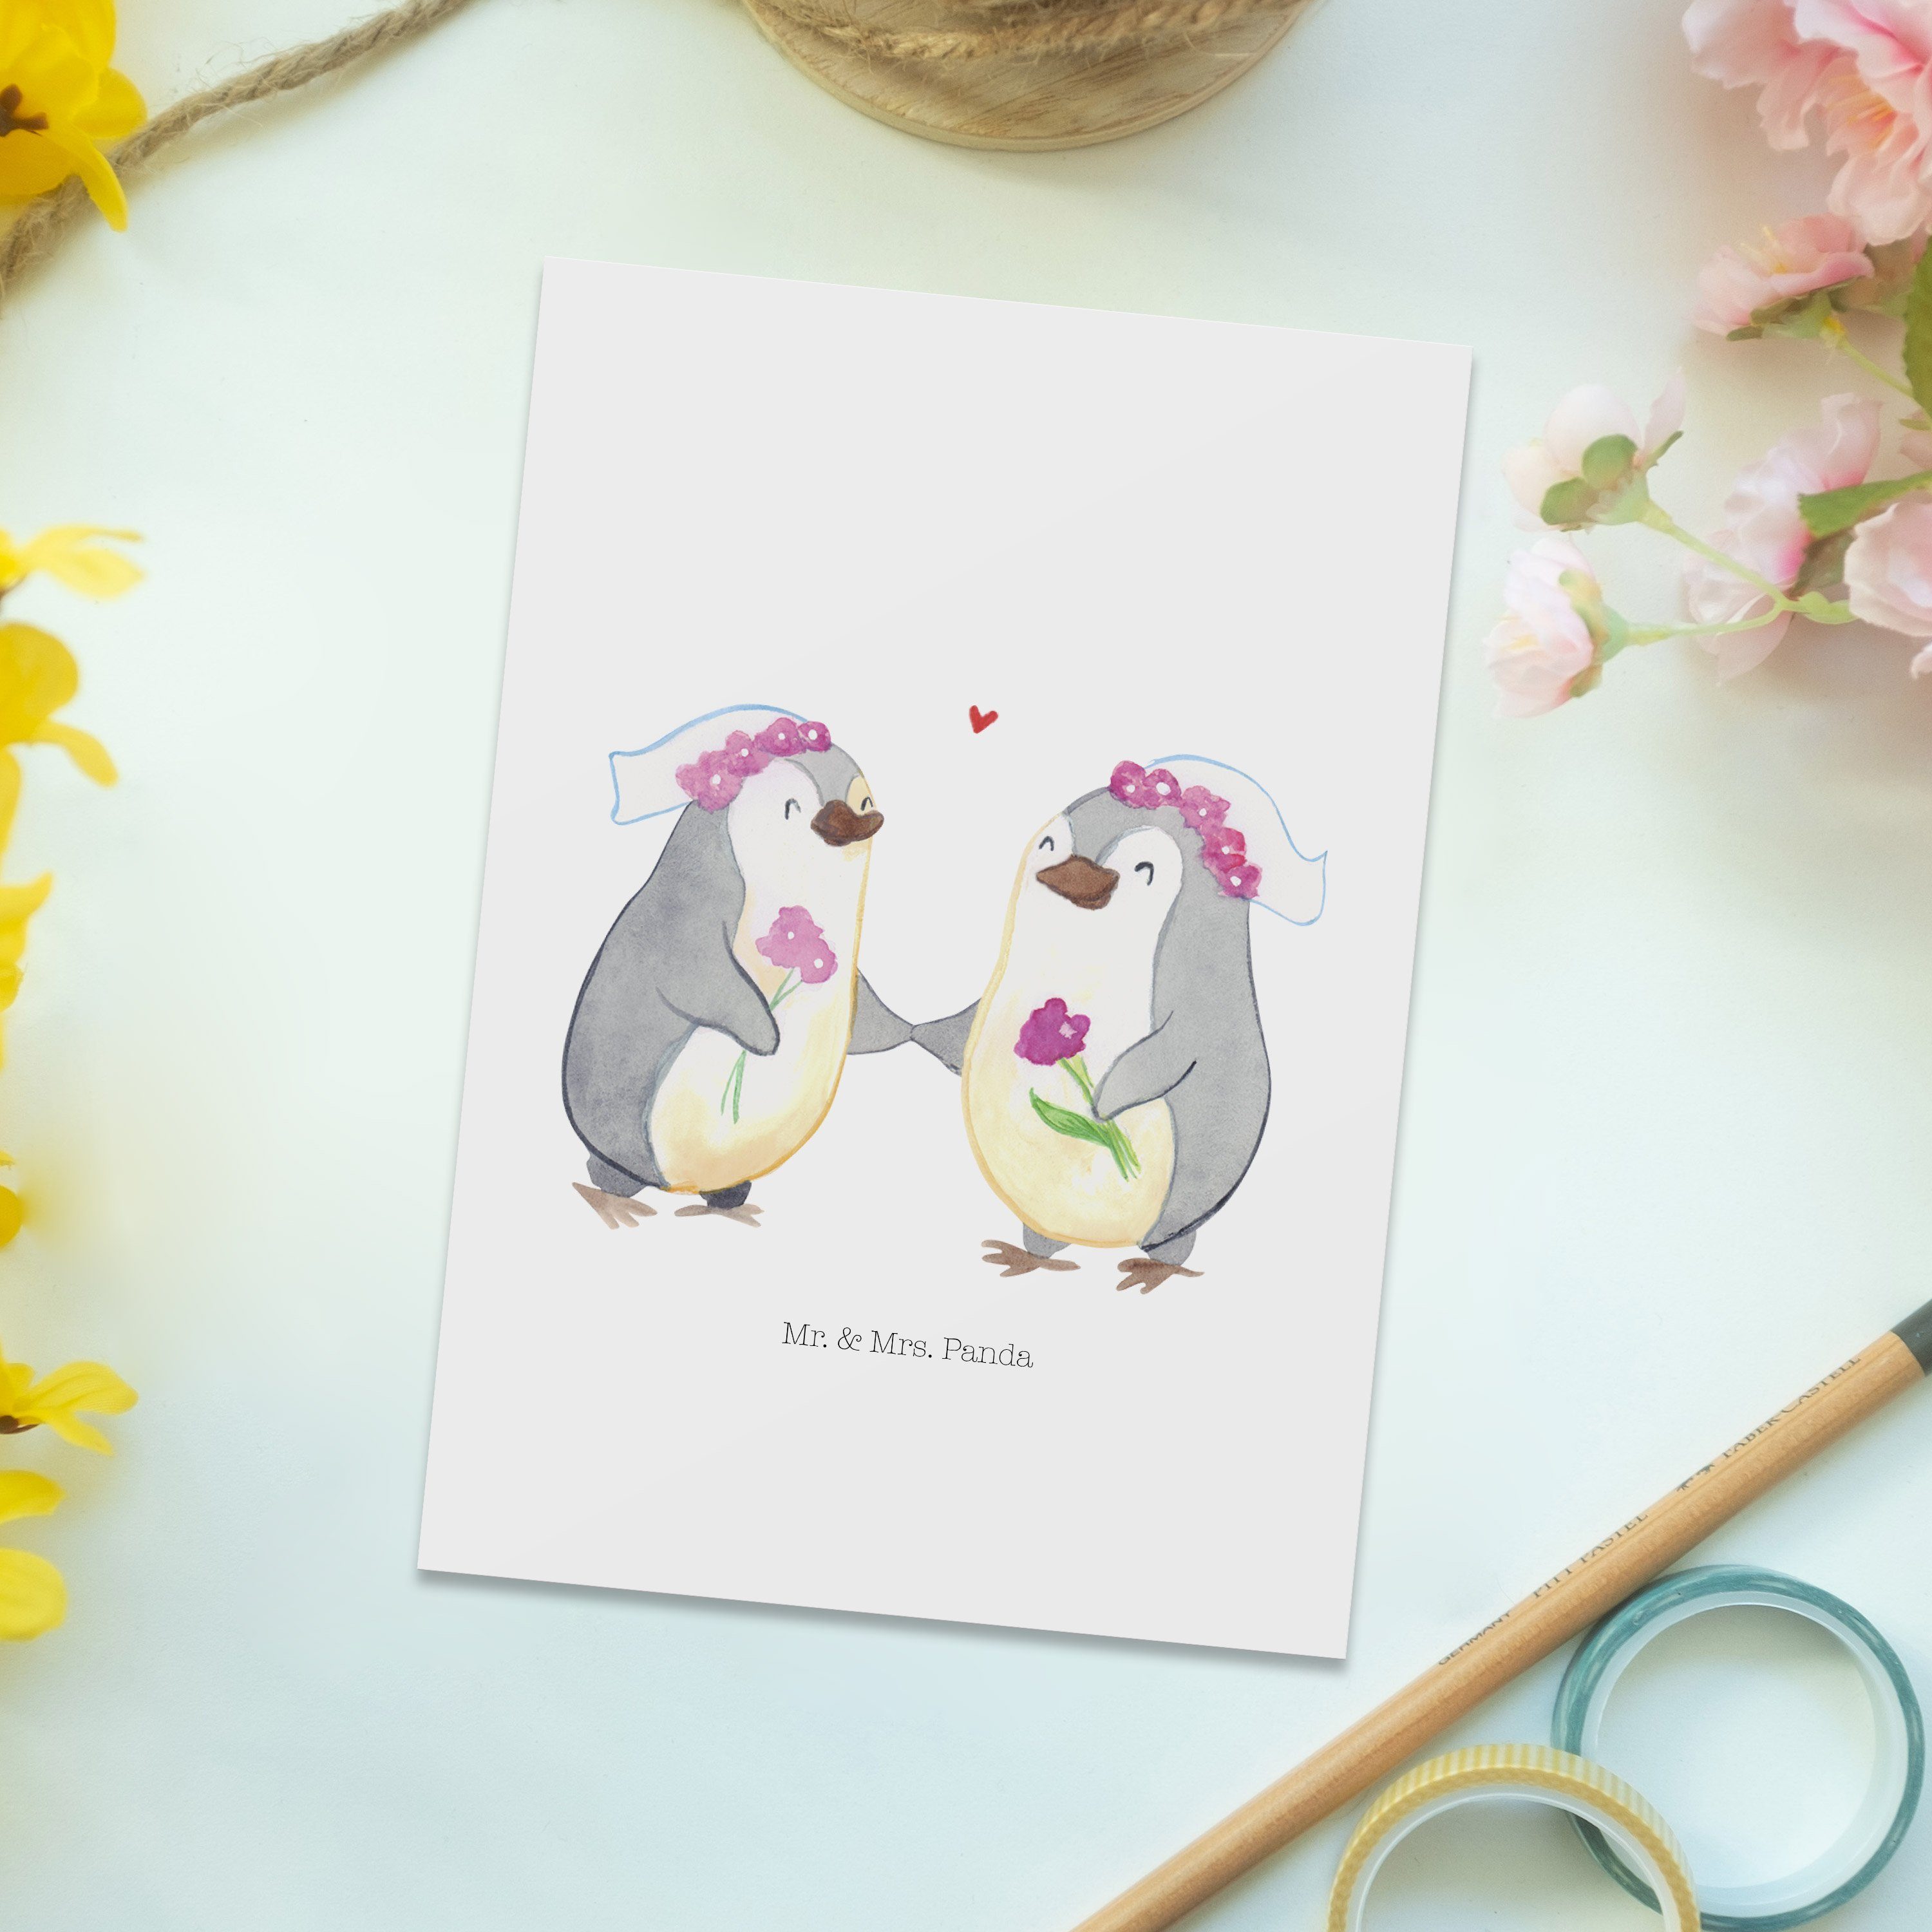 & Weiß Mrs. - Postkarte Panda Geschenk, Hochzeitsgeschenkide - Pride Lesbian Mr. Pinguin Pärchen